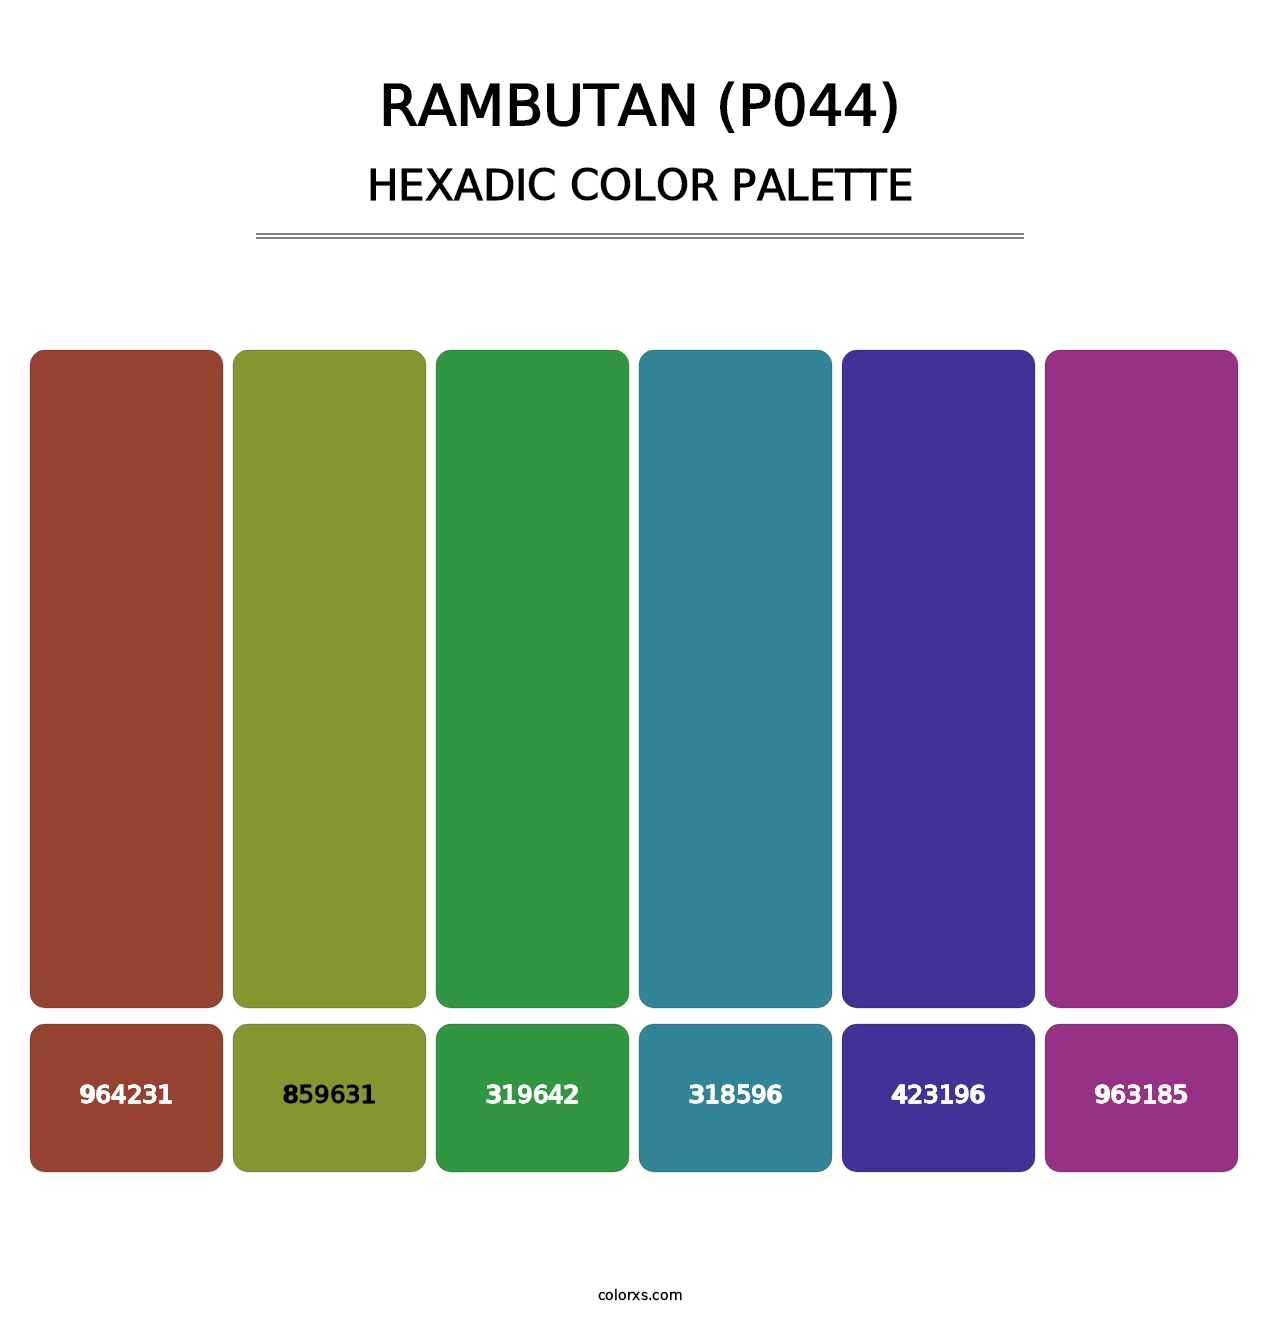 Rambutan (P044) - Hexadic Color Palette